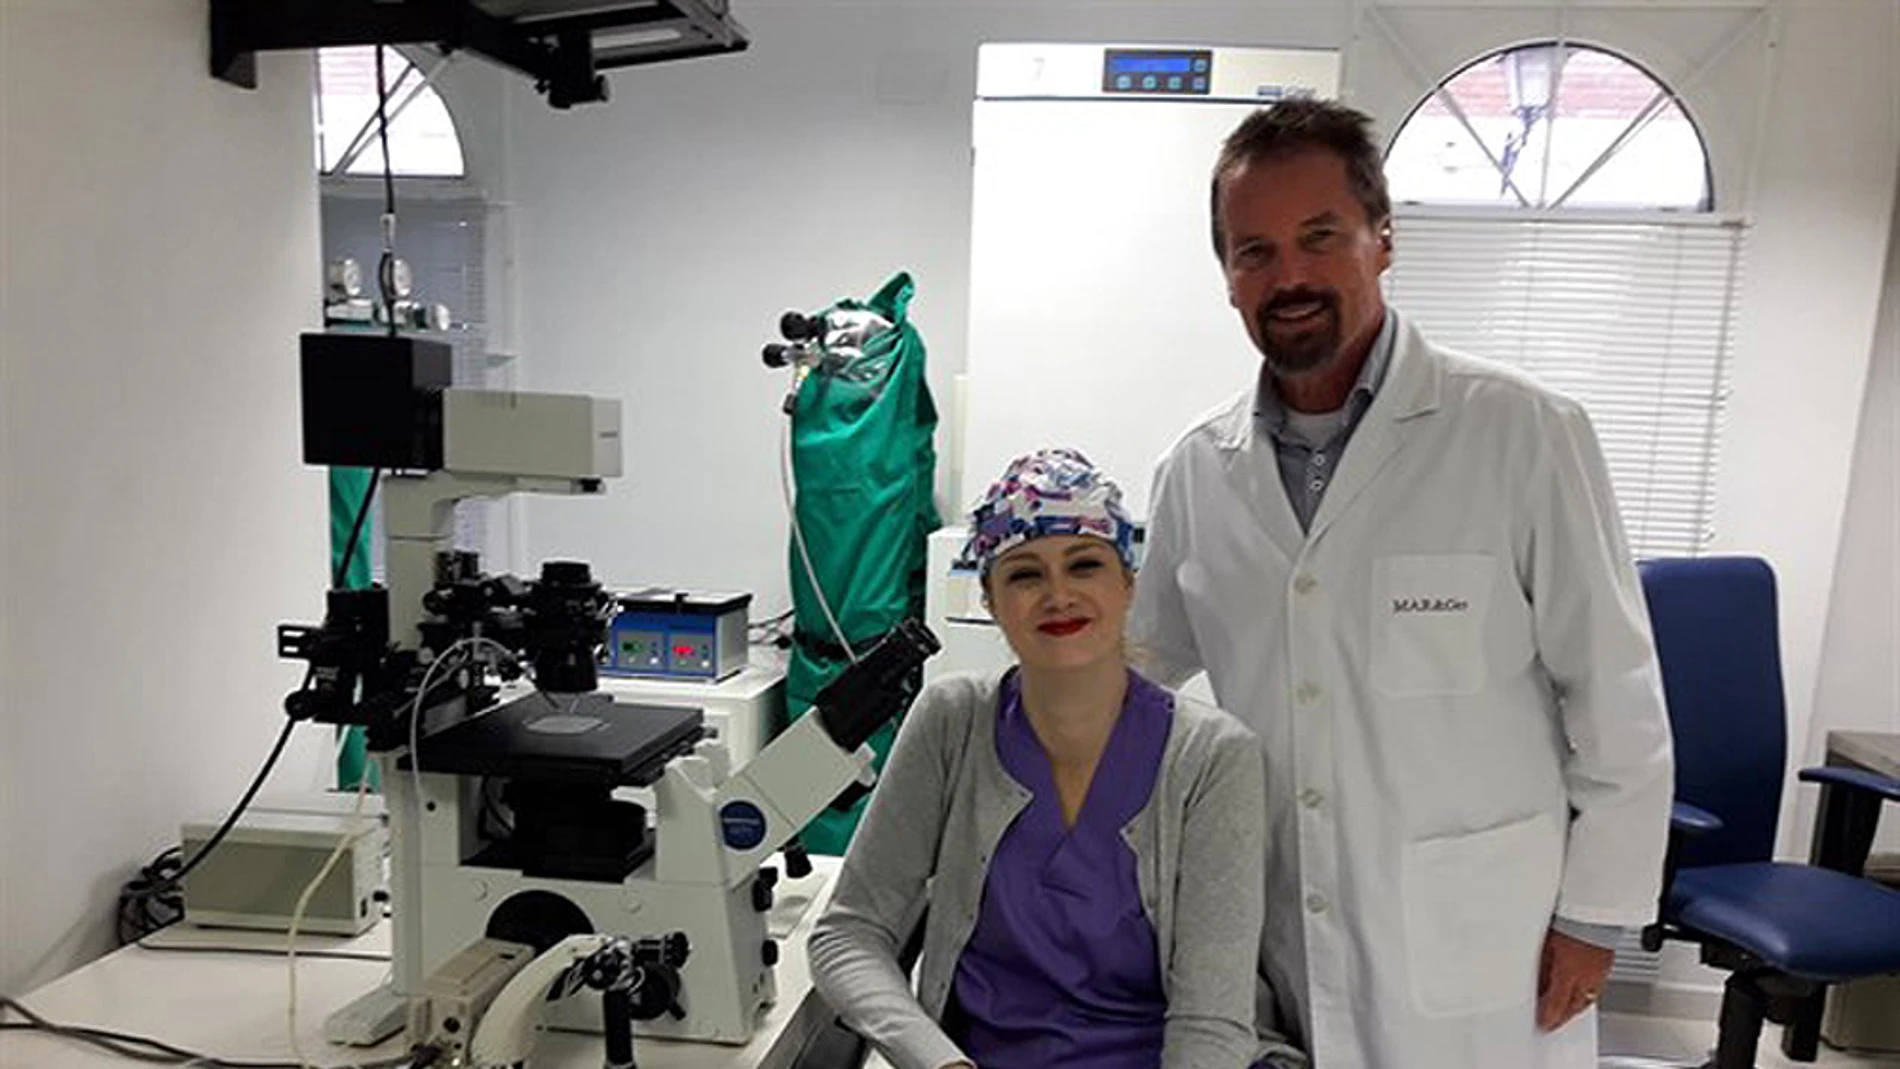 El doctor Jan Tesarik con un miembro de su equipo en la clínica Margen